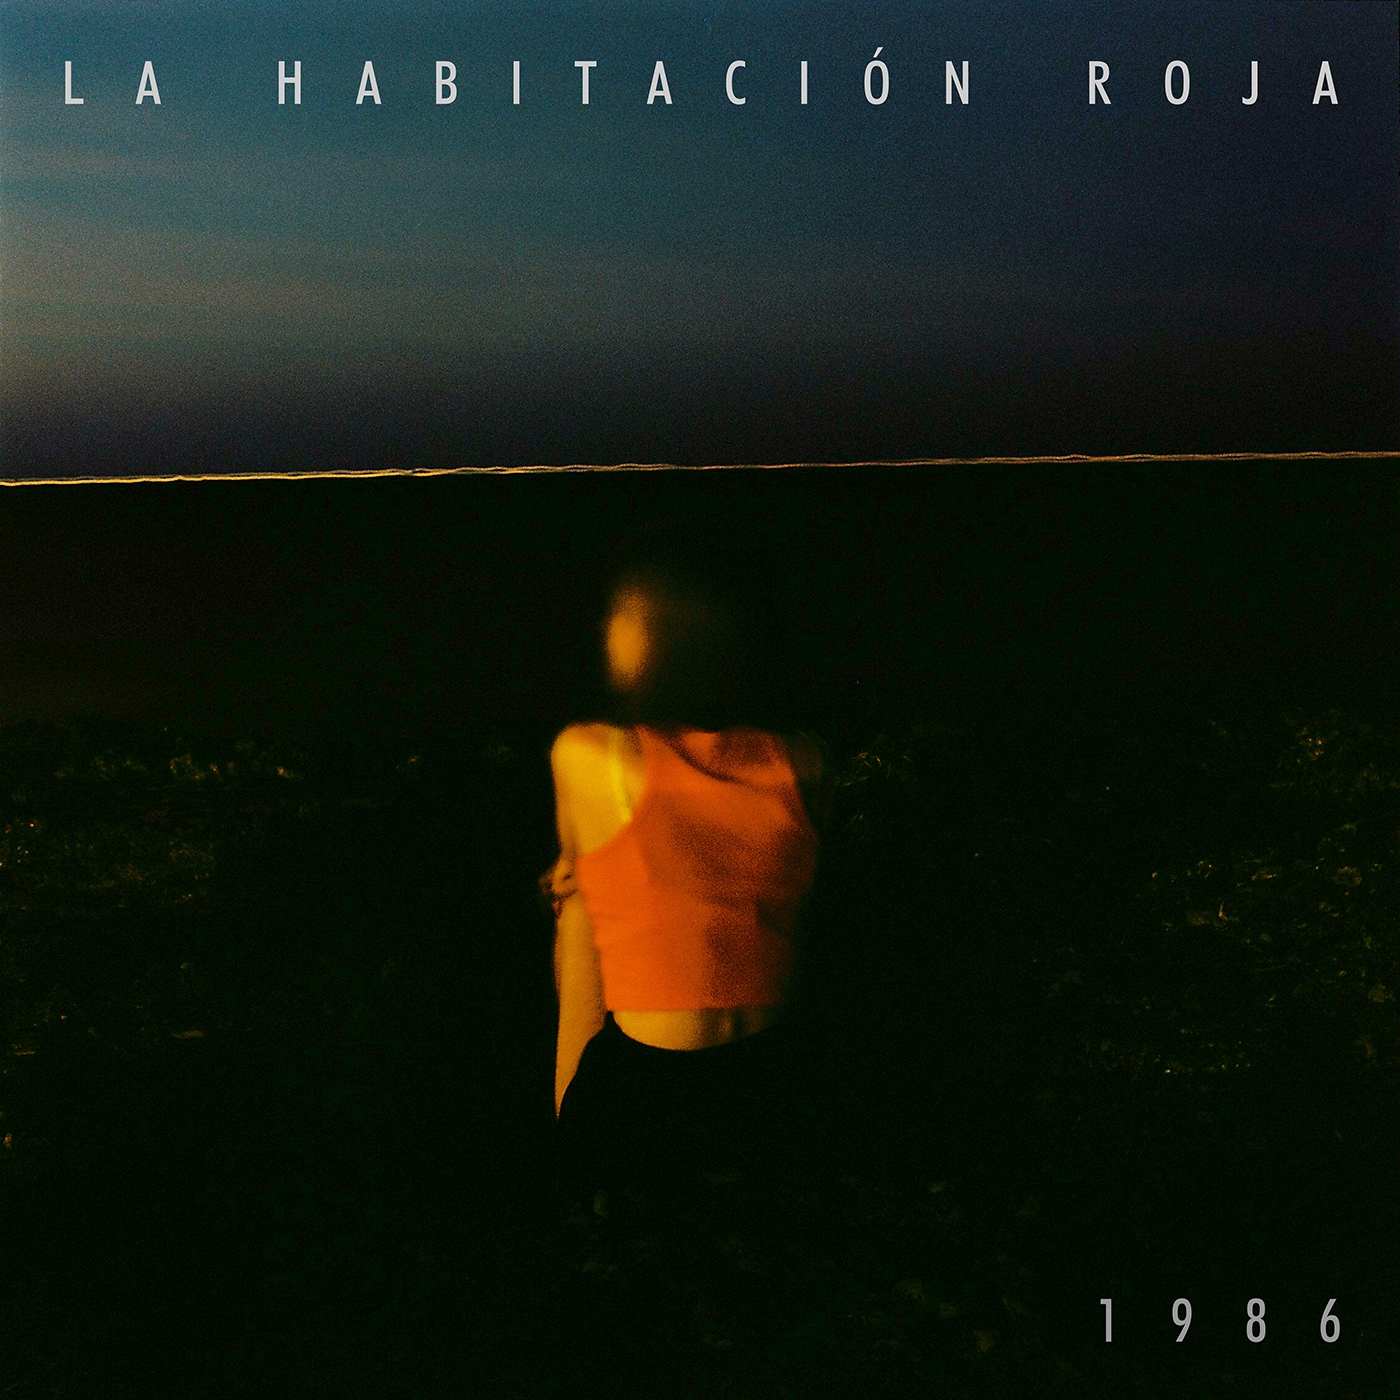  Ya disponible  ‘1986’, el nuevo single de La Habitación Roja